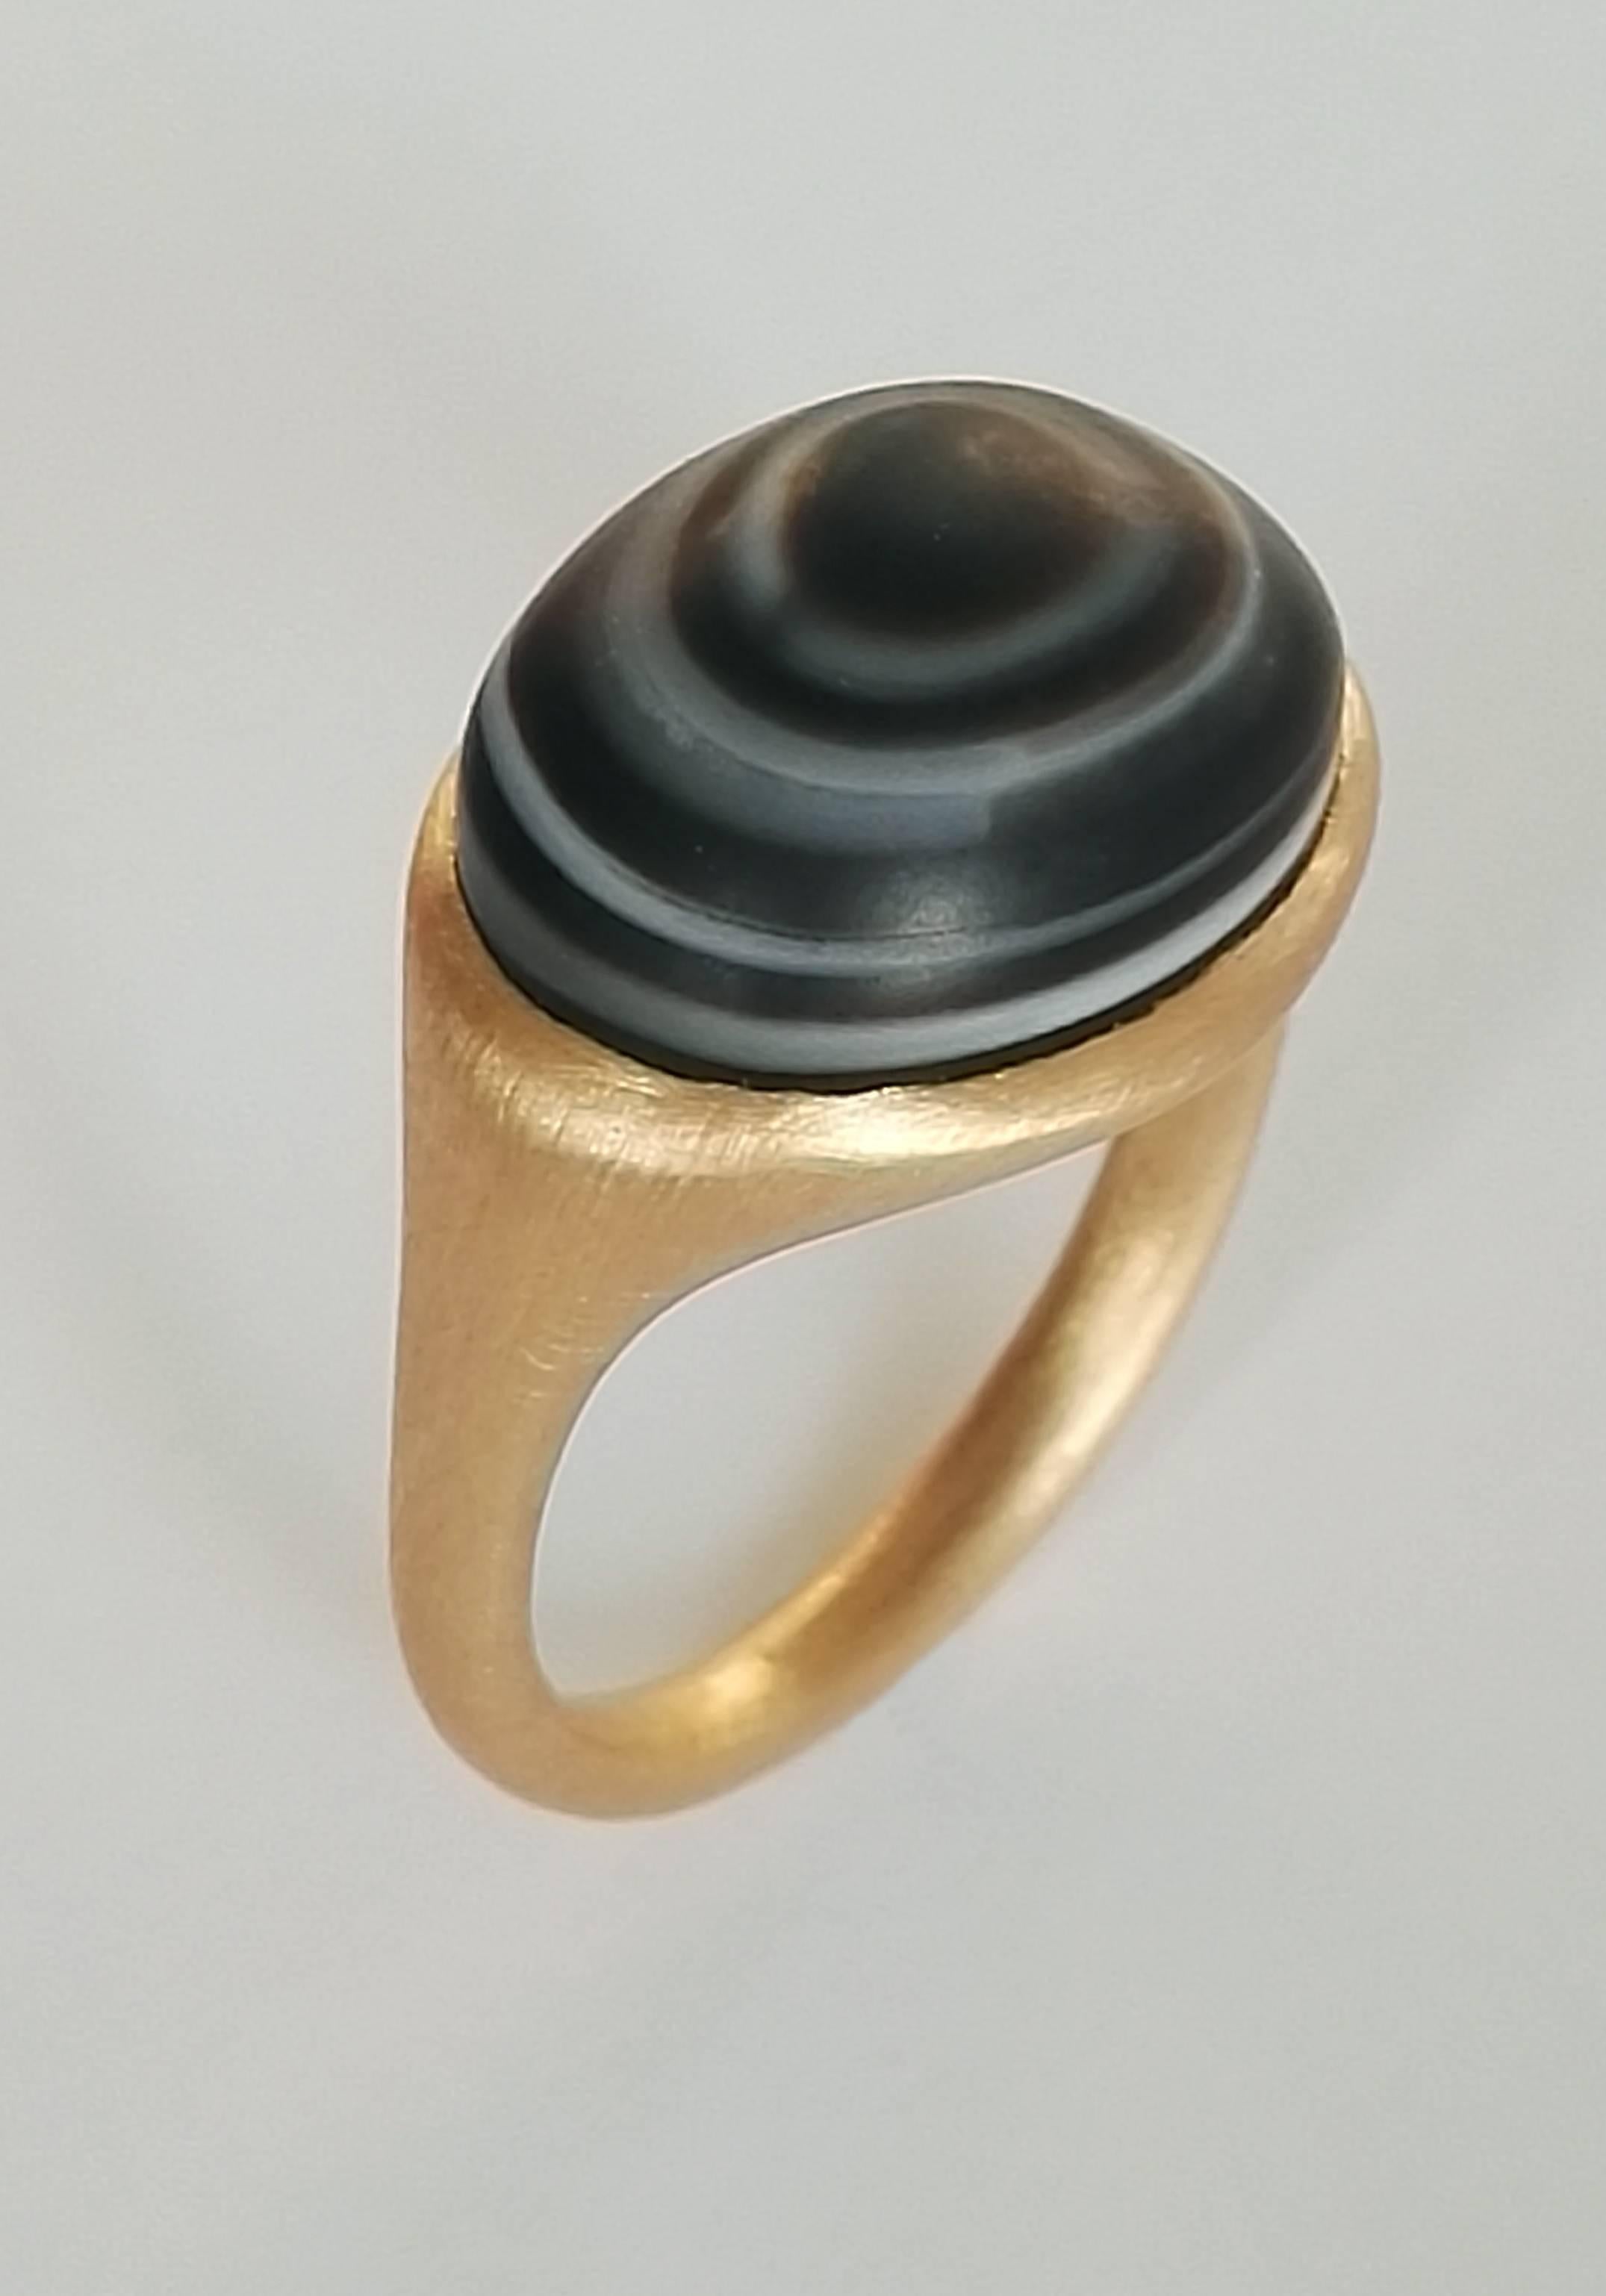 Dalben Design Unisex Ring aus 18k Gelbgold mit einem dunkelbraunen und weiß gebänderten Achat mit 11,5 Karat in Lünettenfassung.  größe 8 USA - 57 EU, passt sich den meisten Fingergrößen an. Der Ring wurde entworfen und handgefertigt in unserem